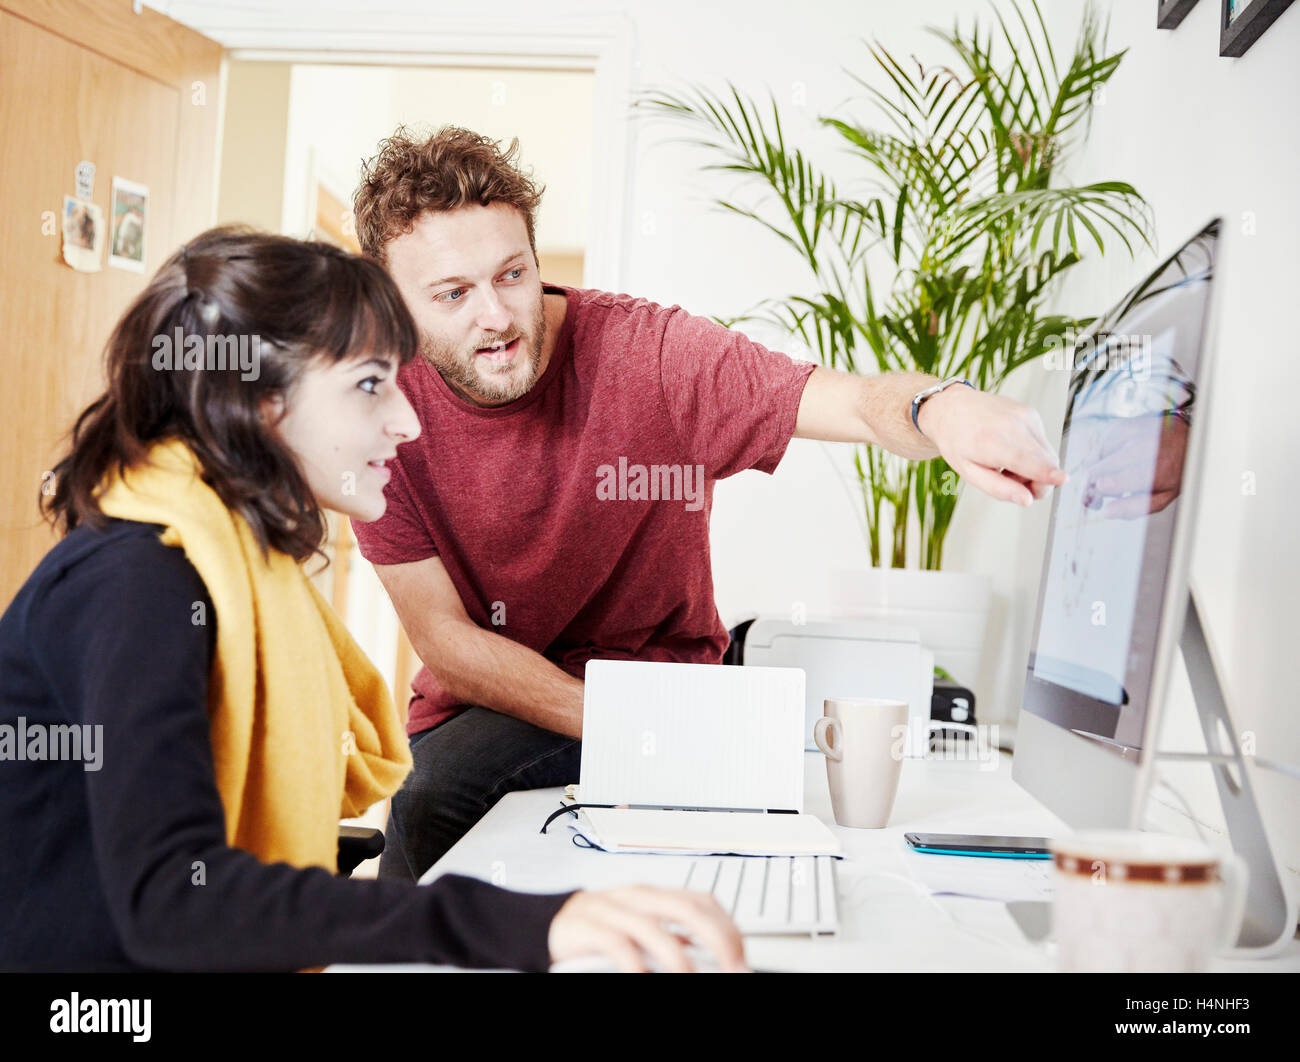 Deux personnes travaillant ensemble au pouvoir, regarder un écran d'ordinateur. Banque D'Images